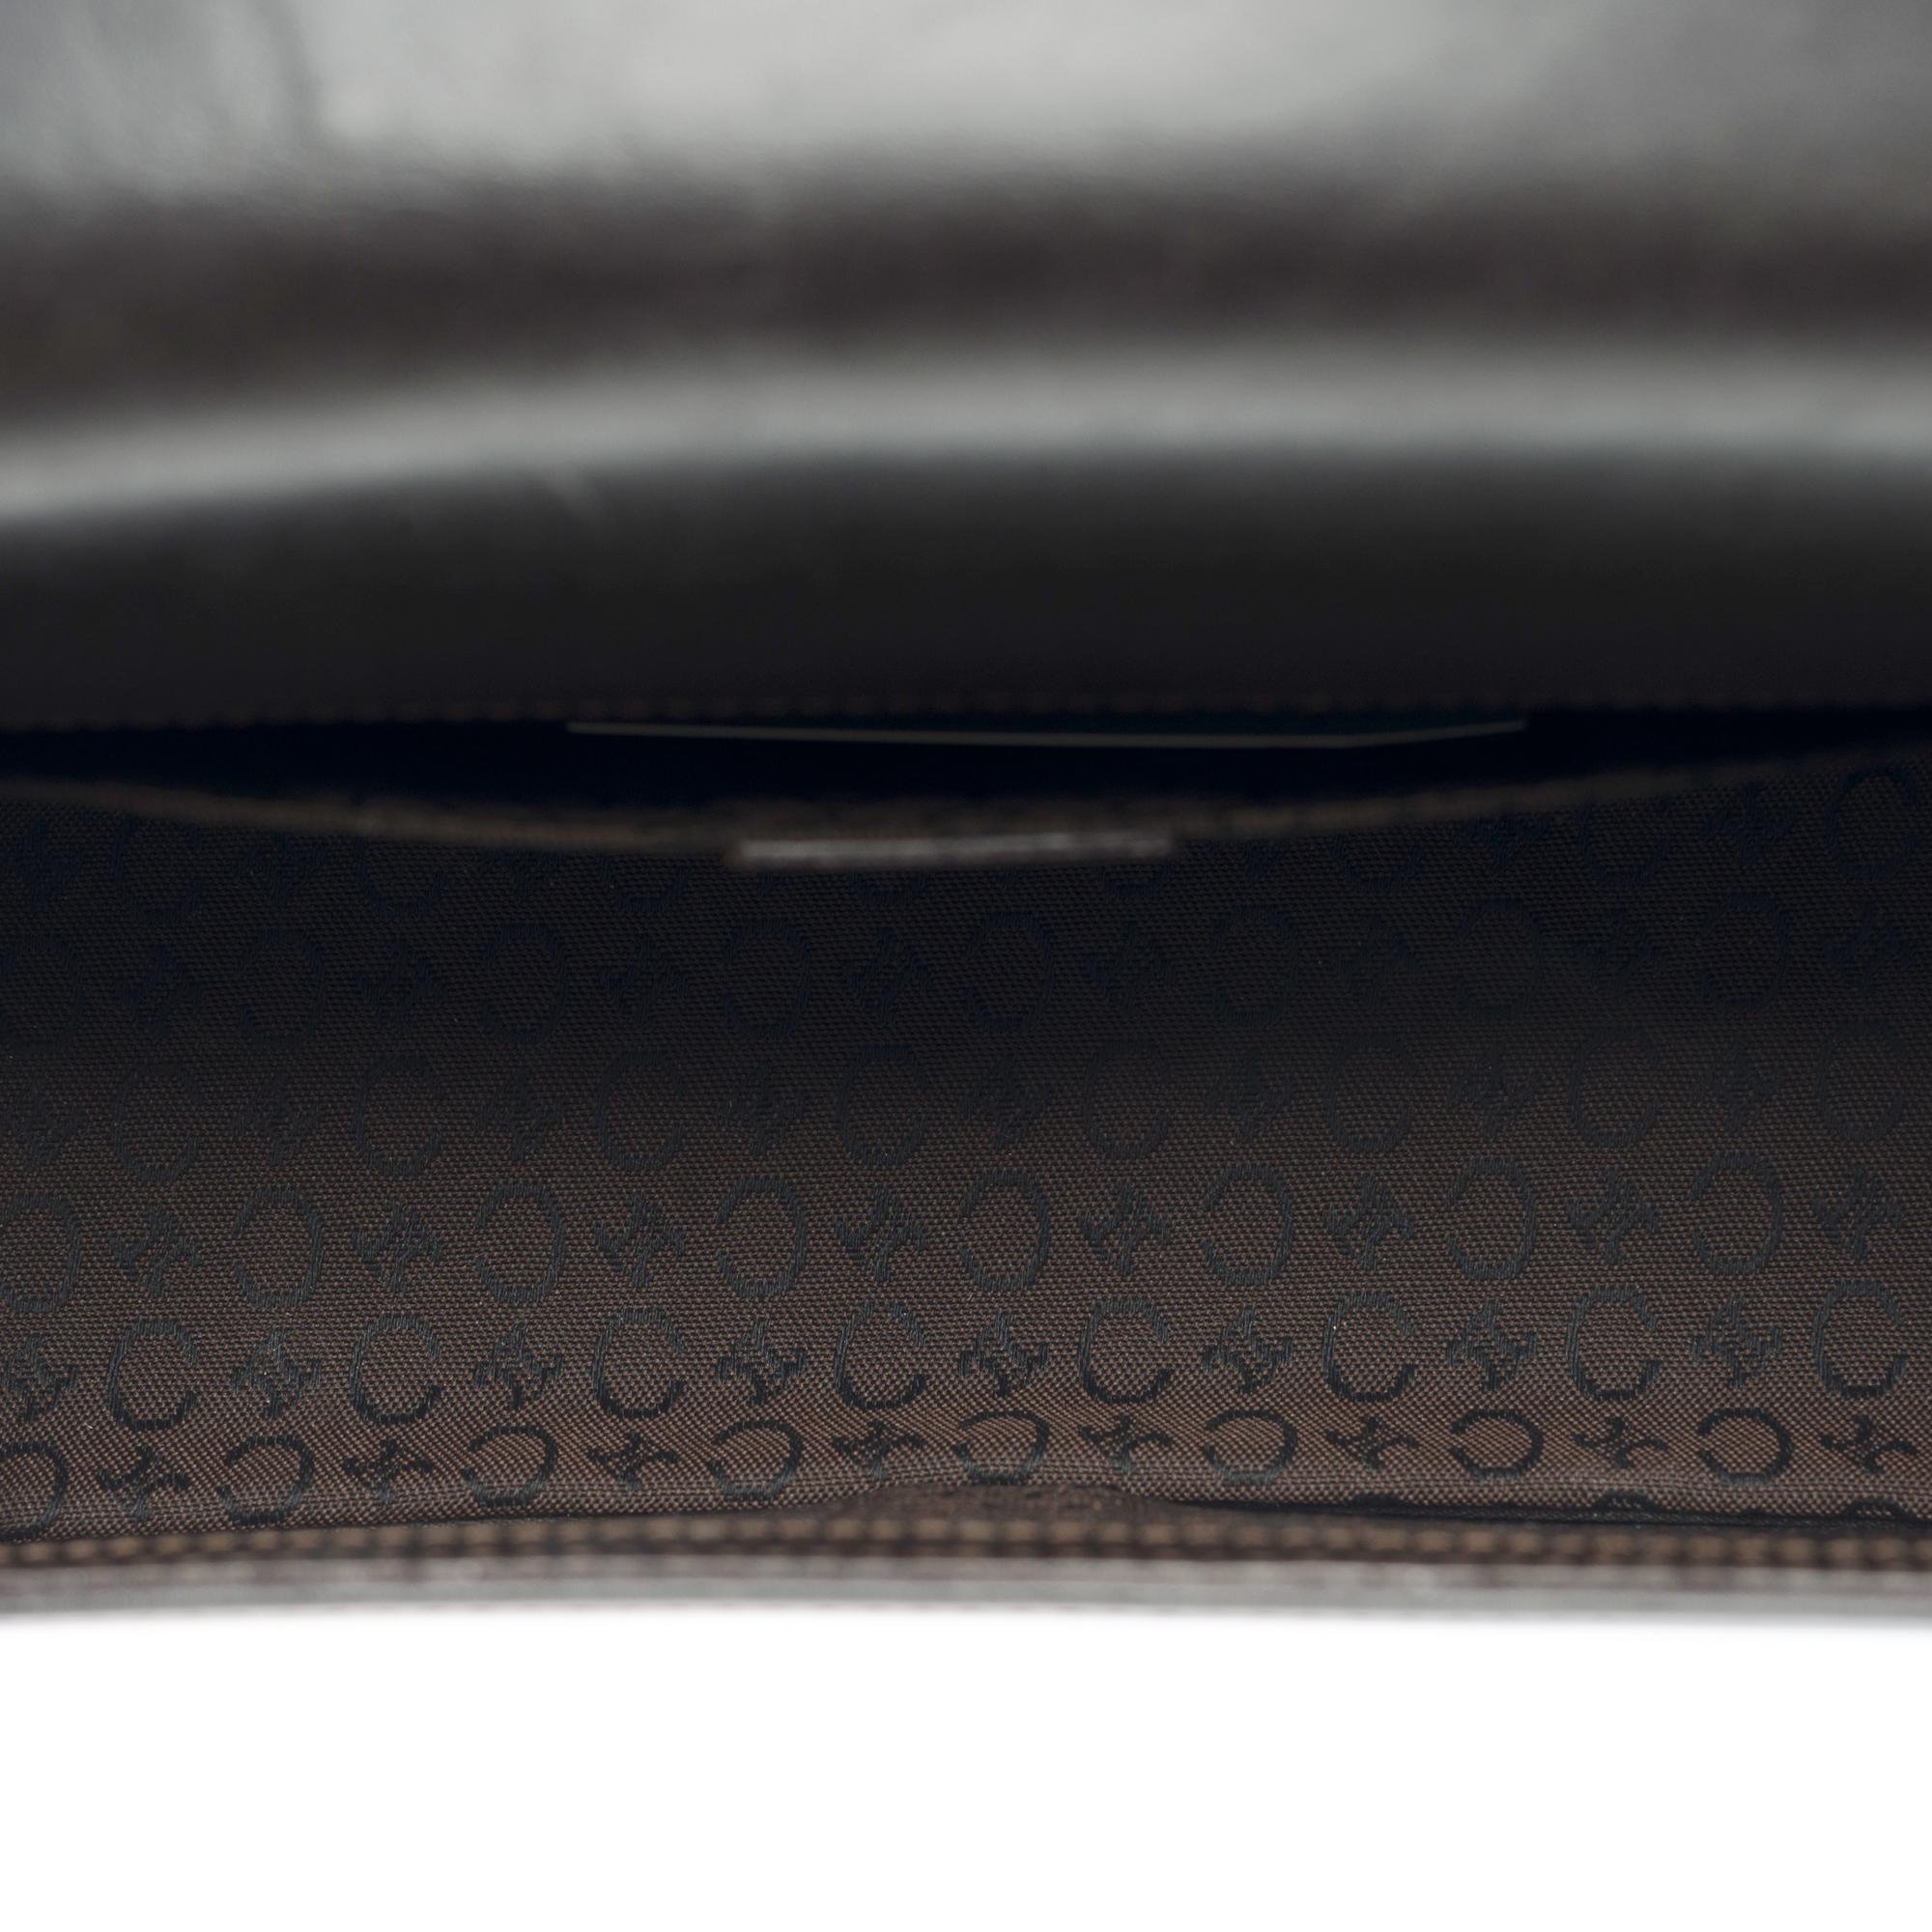 Celine Triomphe shoulder flap bag in black leather, GHW 4